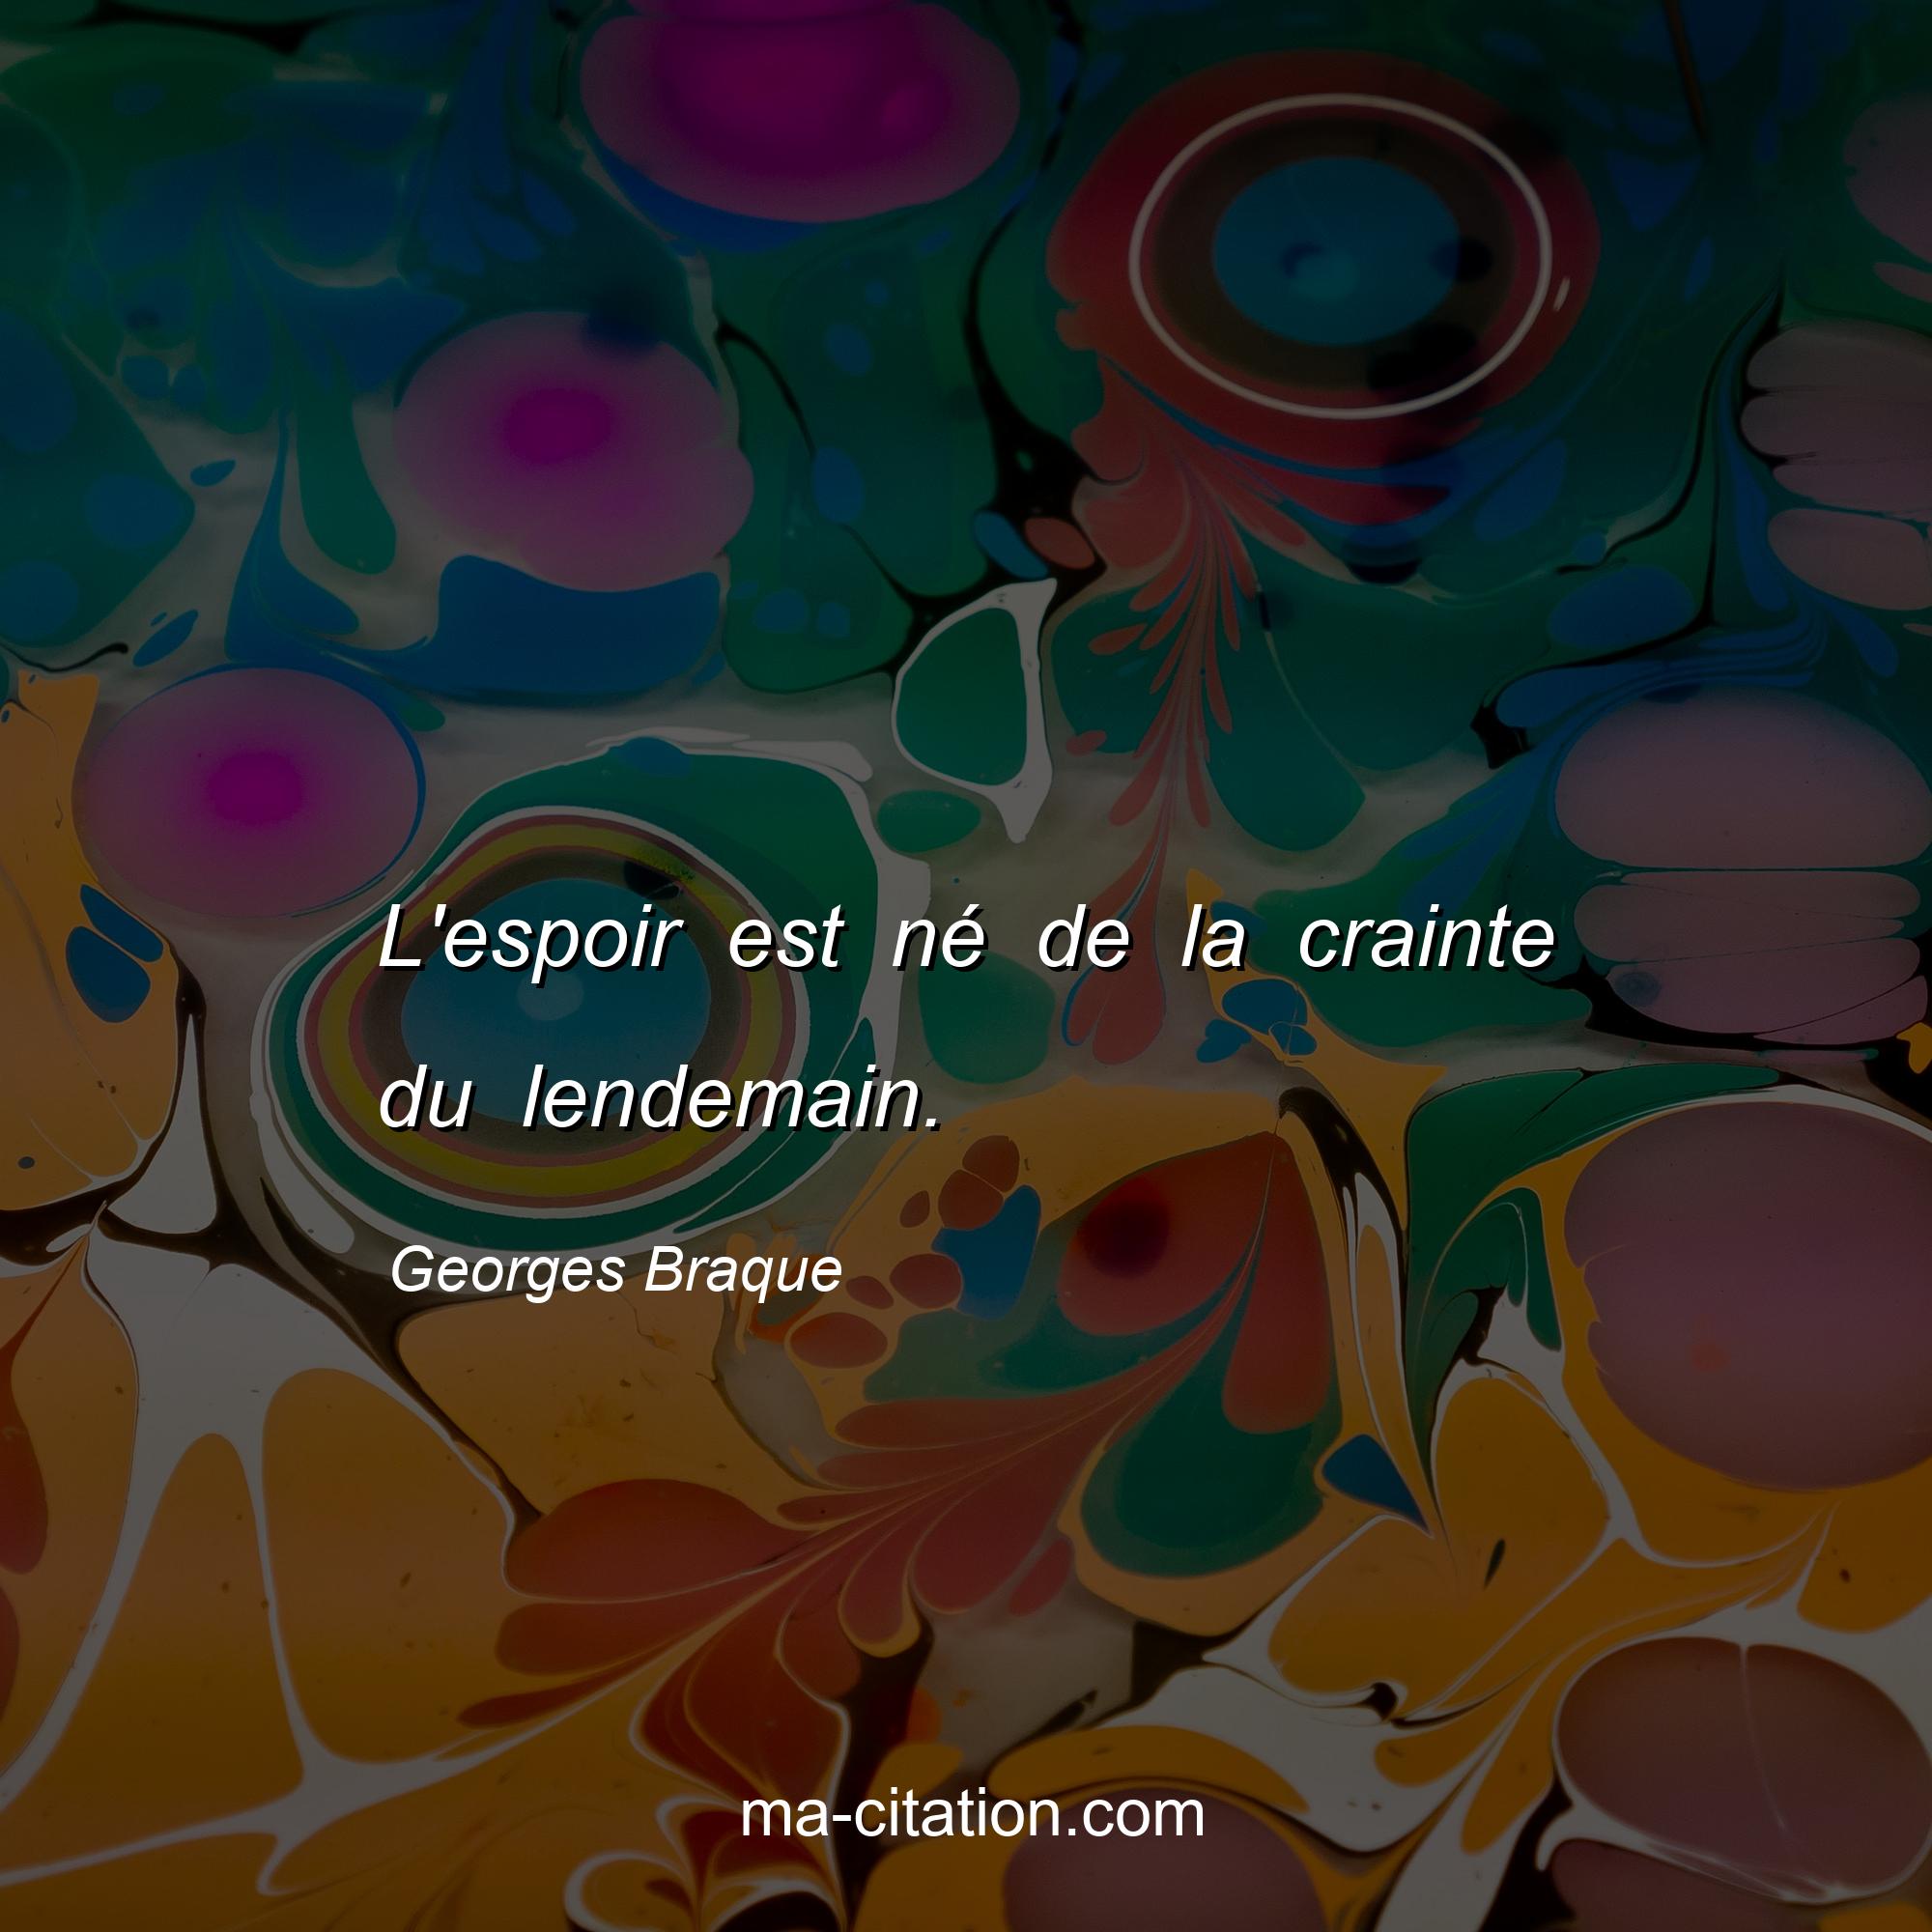 Georges Braque : L'espoir est né de la crainte du lendemain.